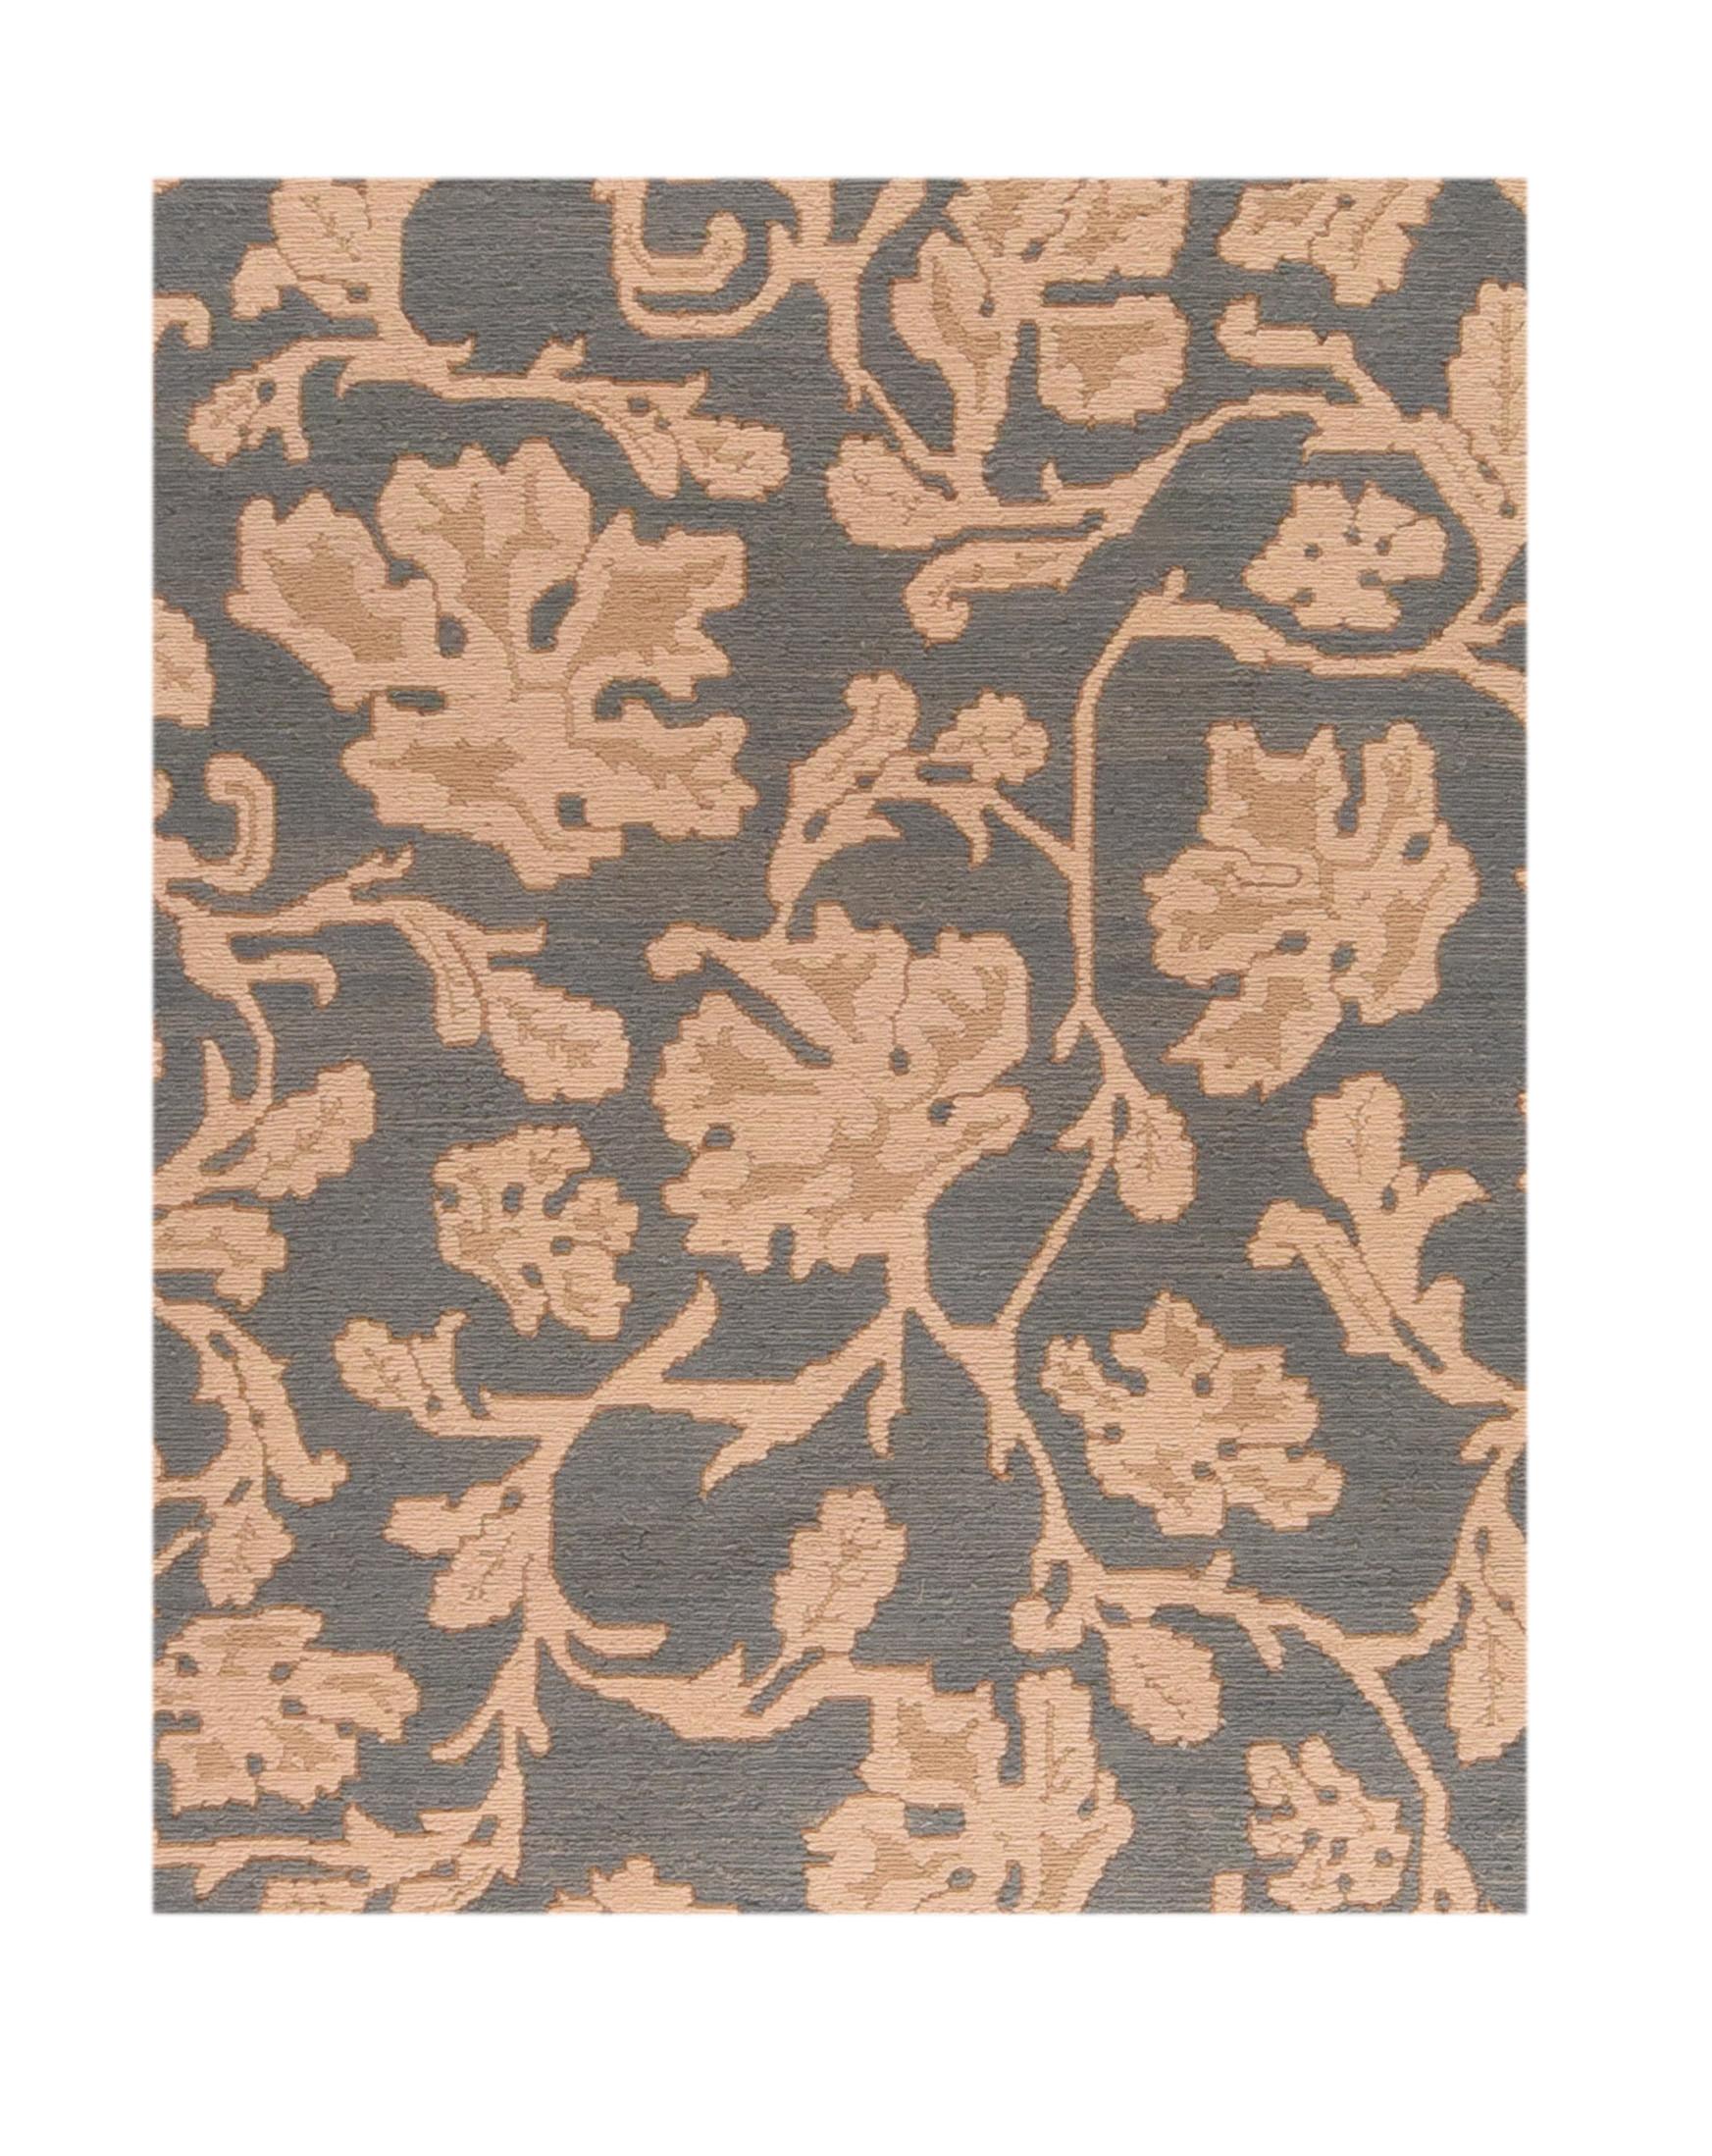 Le sumak (également orthographié Soumakh, Sumak, Sumac ou Soumac) est une technique de tapisserie consistant à tisser des textiles solides et décoratifs utilisés comme tapis et sacs domestiques. Les baks utilisés pour la literie sont connus sous le